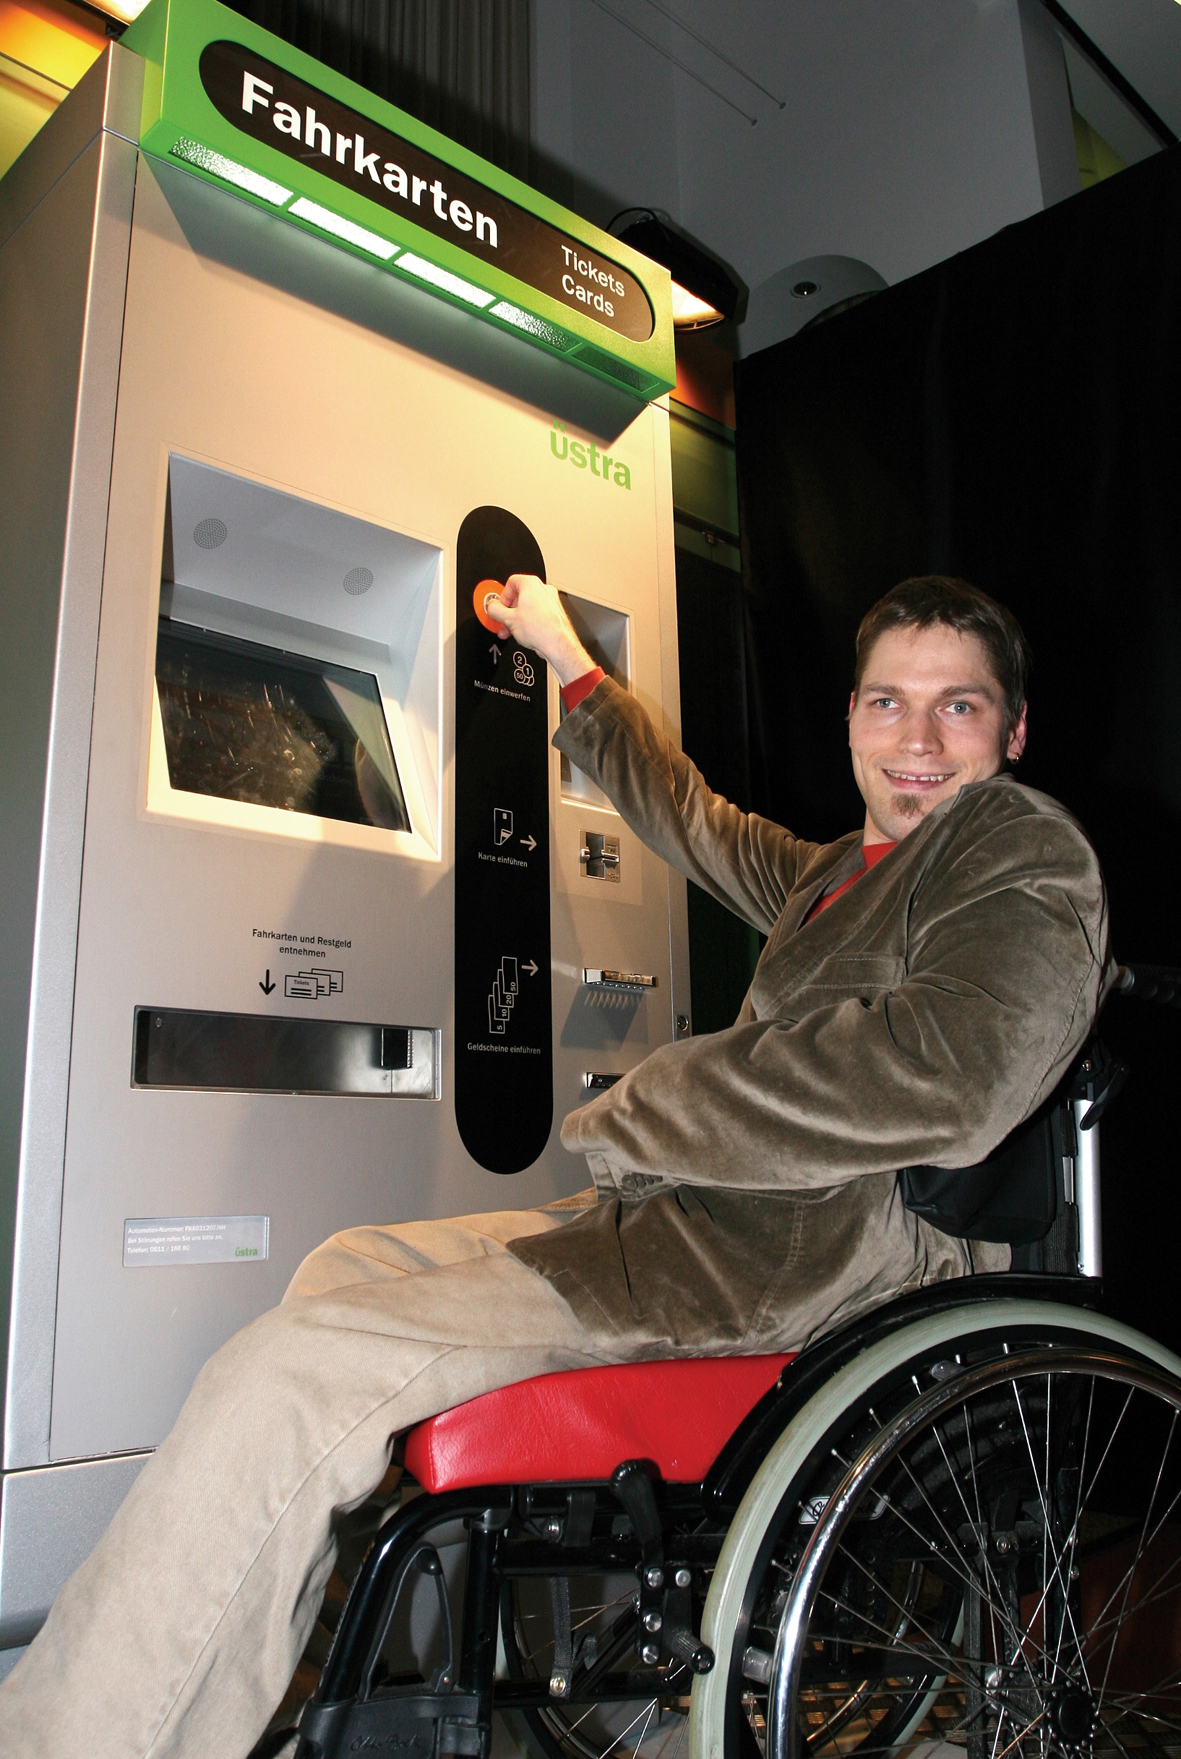 Wheelchair user using a ticket machine